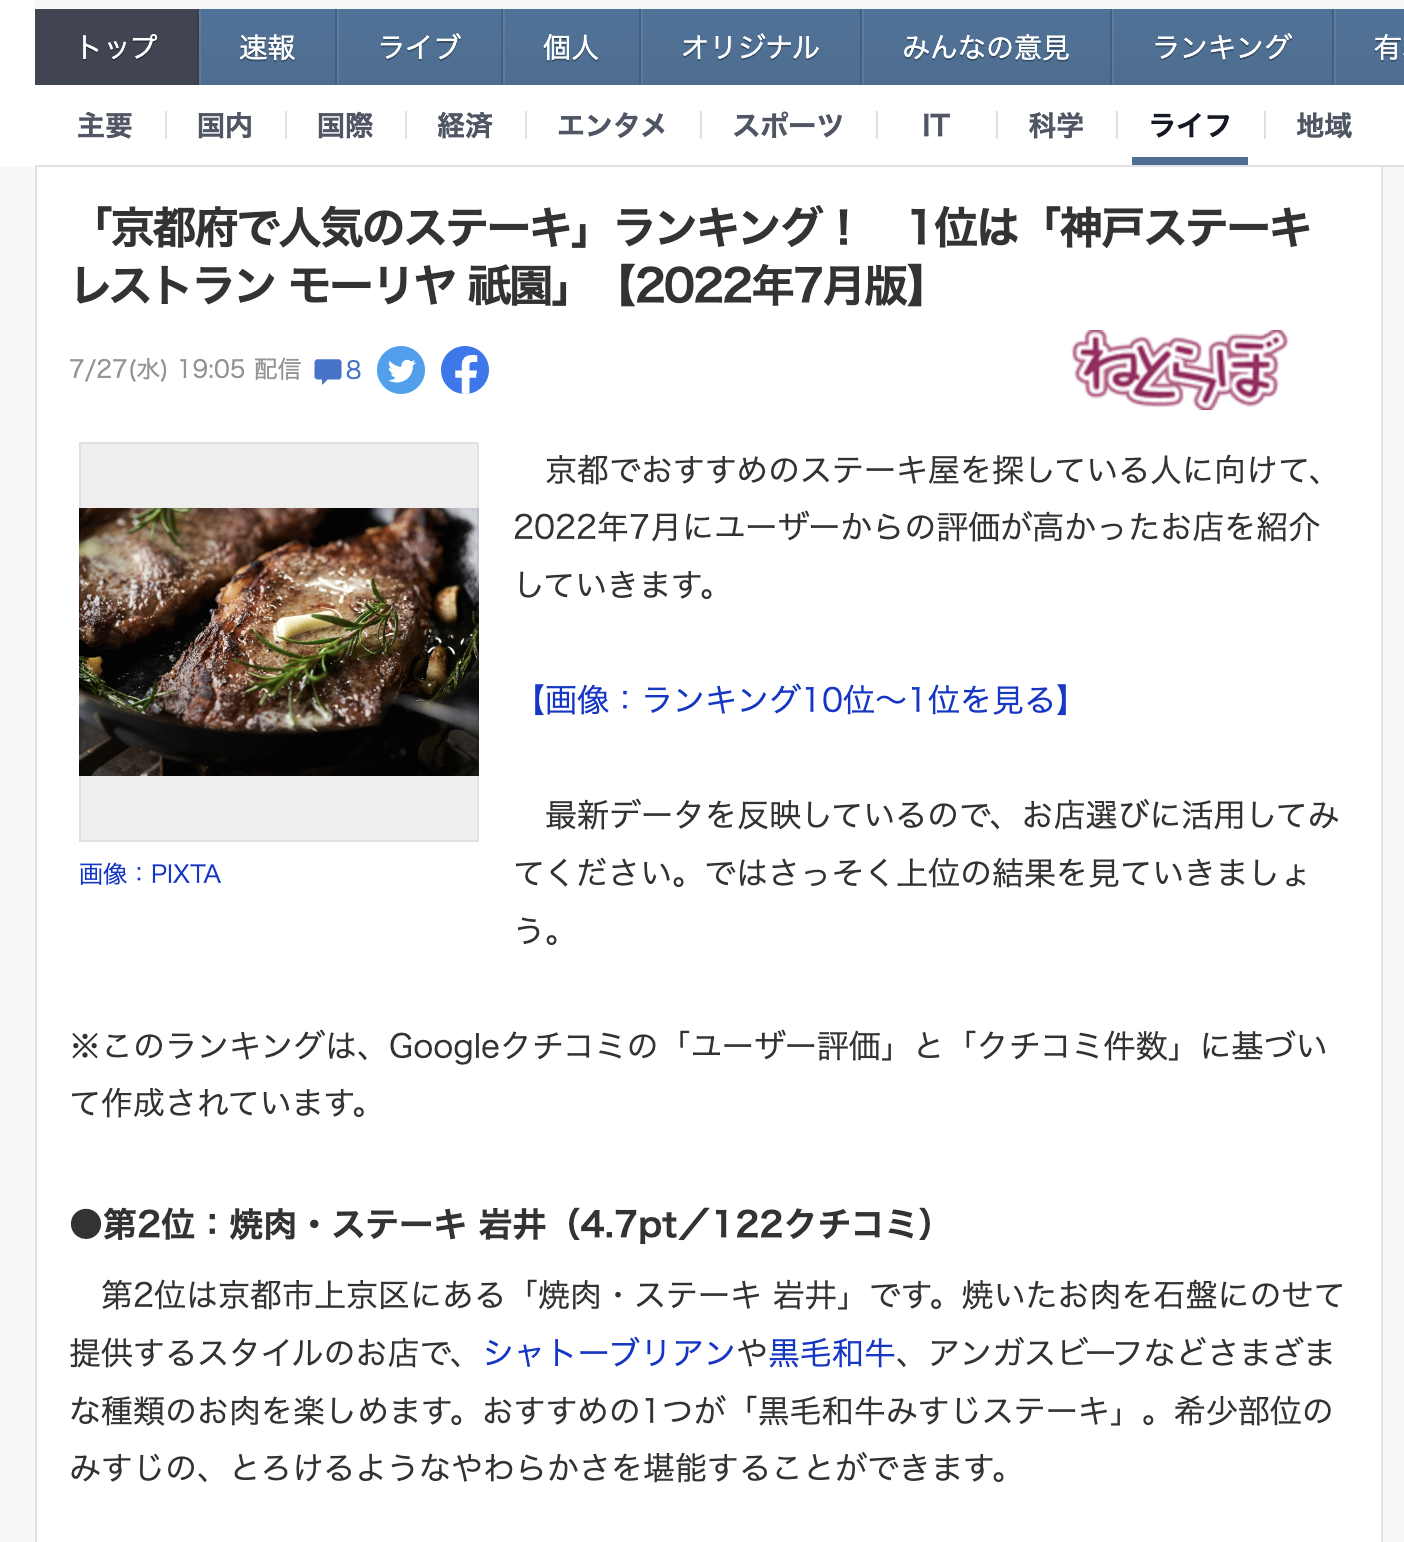 焼肉・ステーキ岩井が【Yahoo!ニュースに掲載されました】